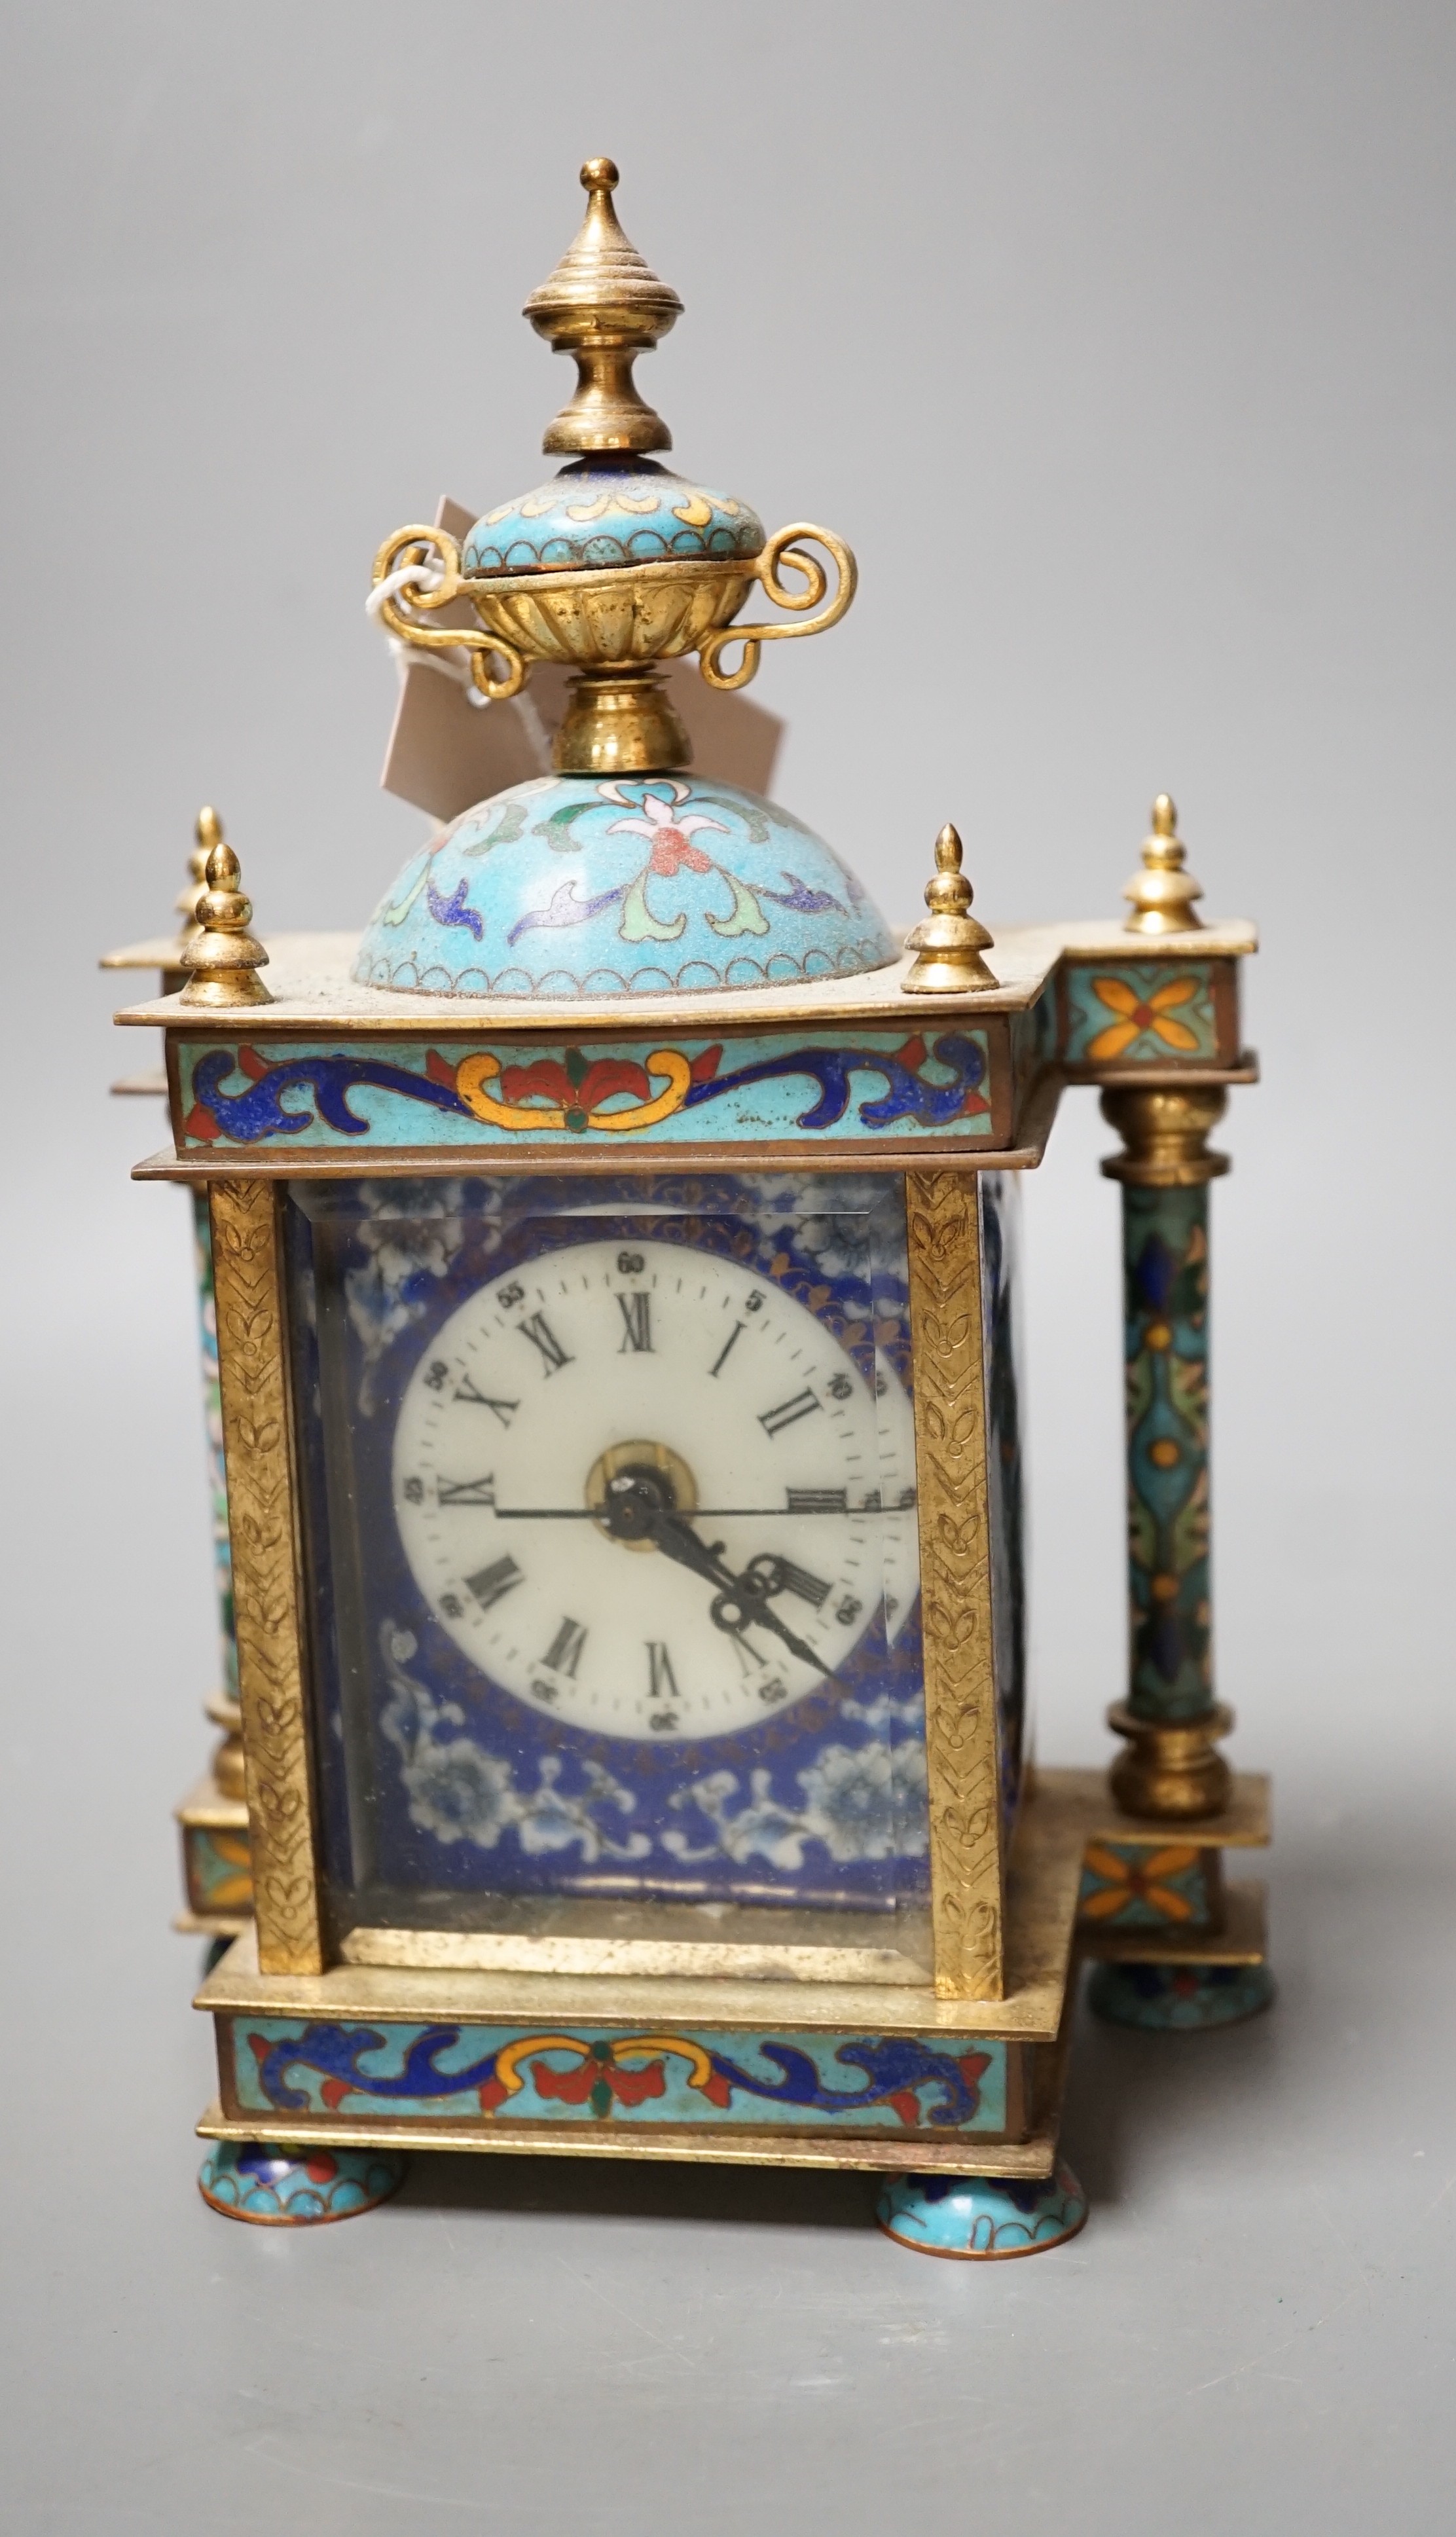 A cloisonné enamel mantel clock, with quartz movement, 22cm